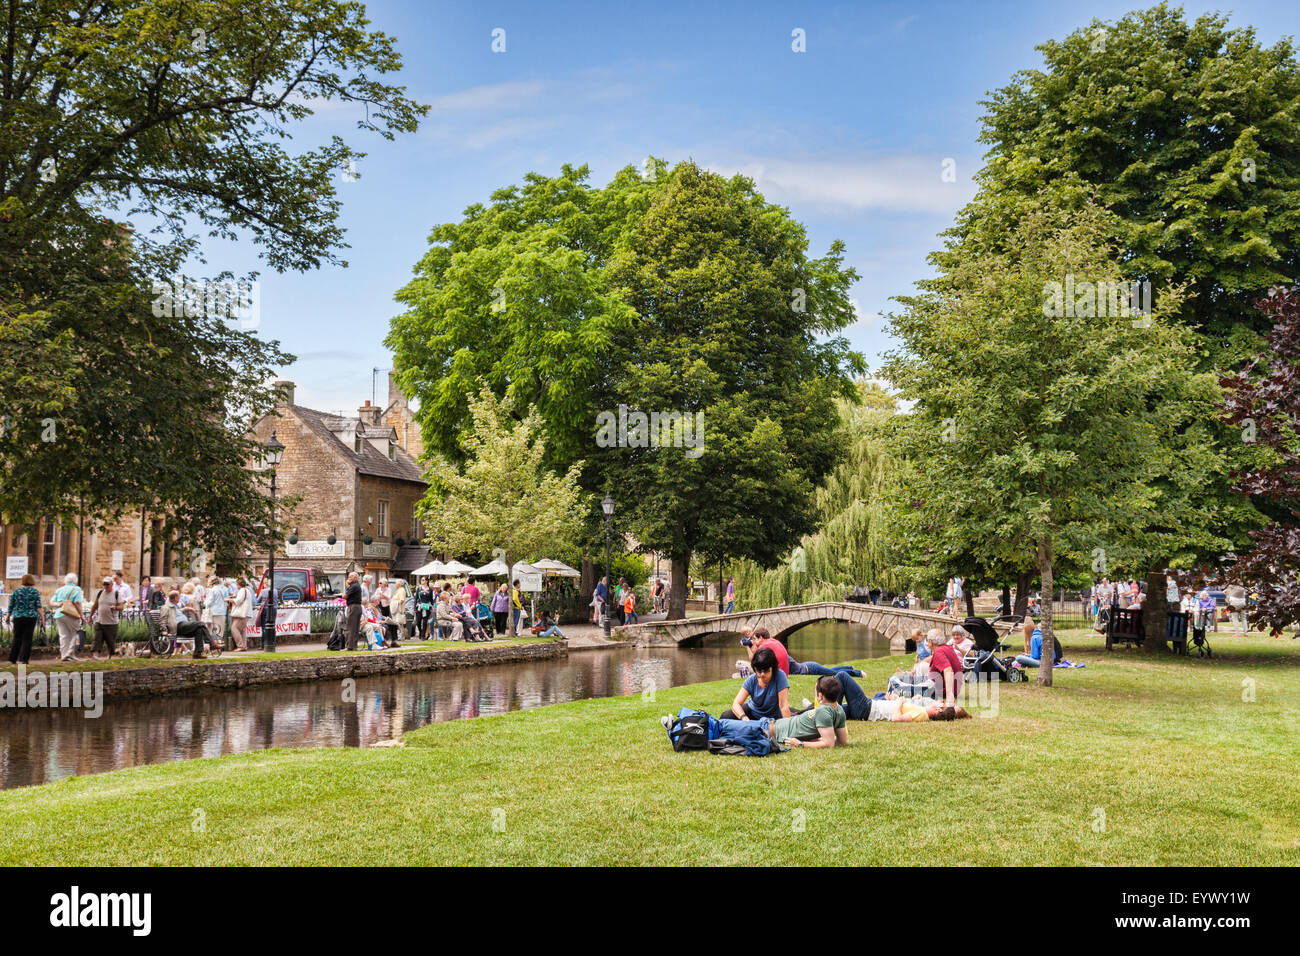 Les touristes en une journée sur un après-midi d'été dans le village de Cotswold Bourton-on-the-water, Gloucestershire, Angleterre. Banque D'Images